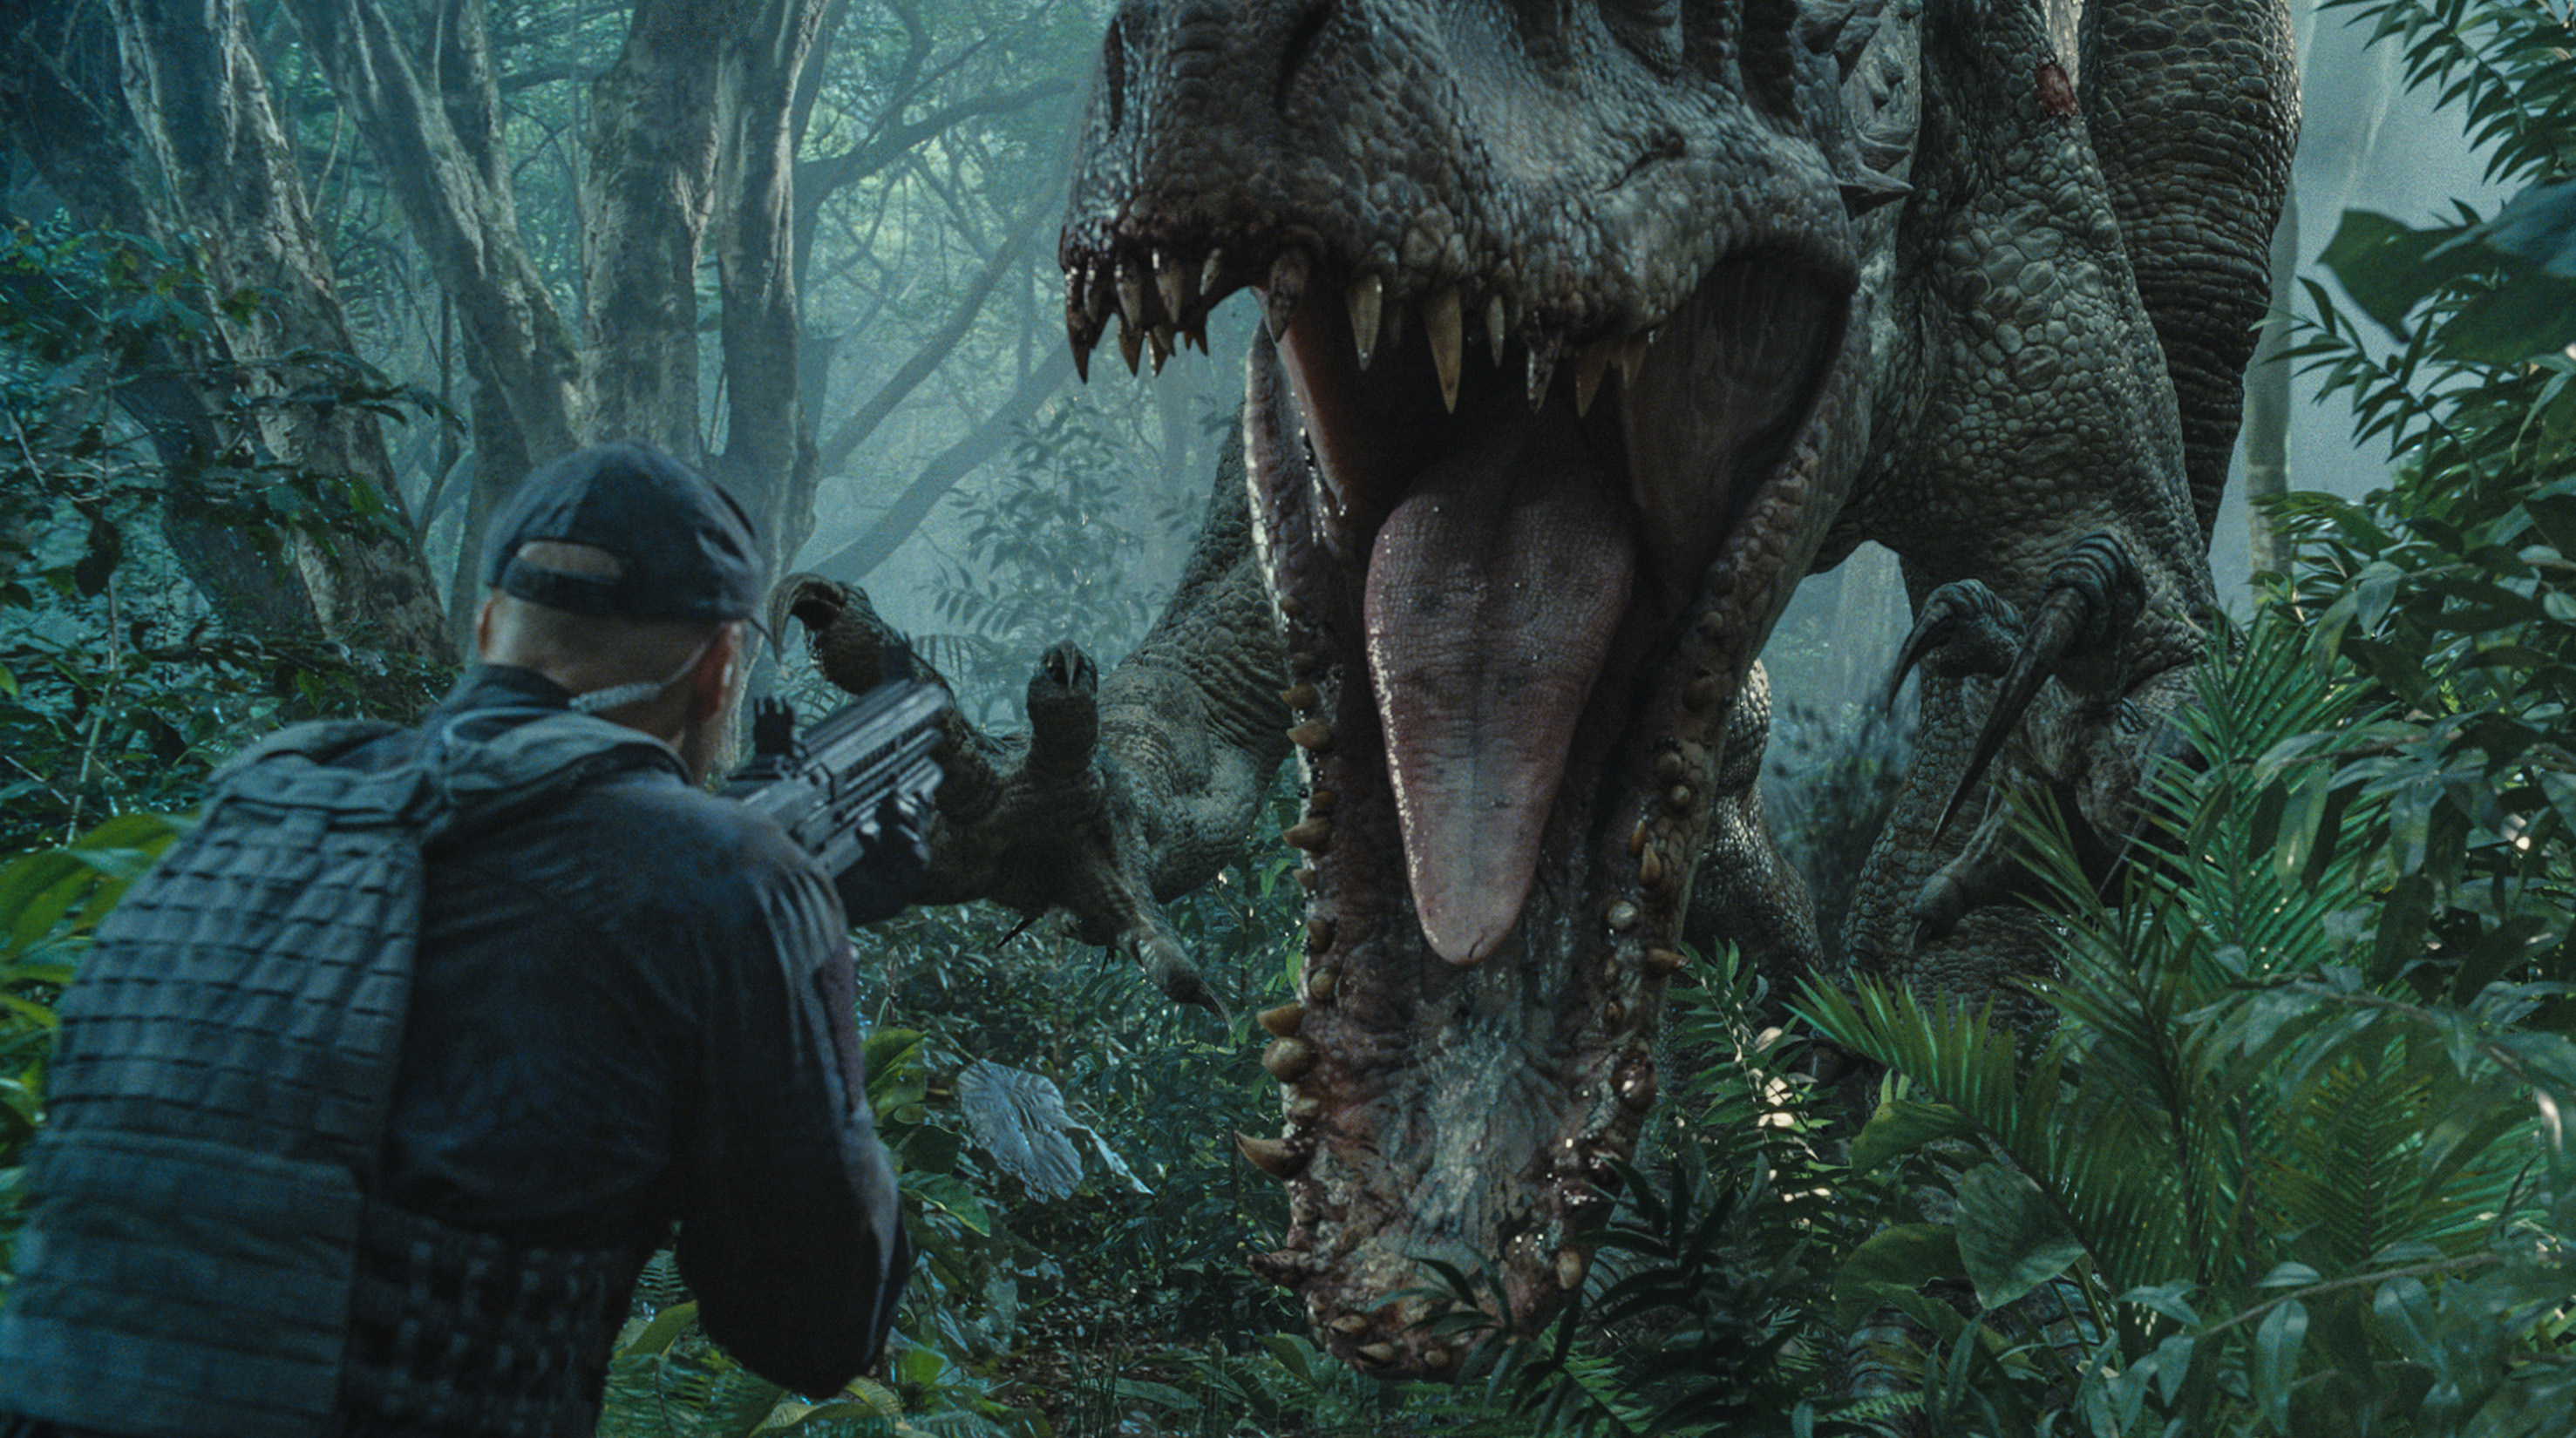 Πέντε πράγματα που δεν θα ίσχυαν αν υπήρχε πραγματικά ένα Jurassic Park